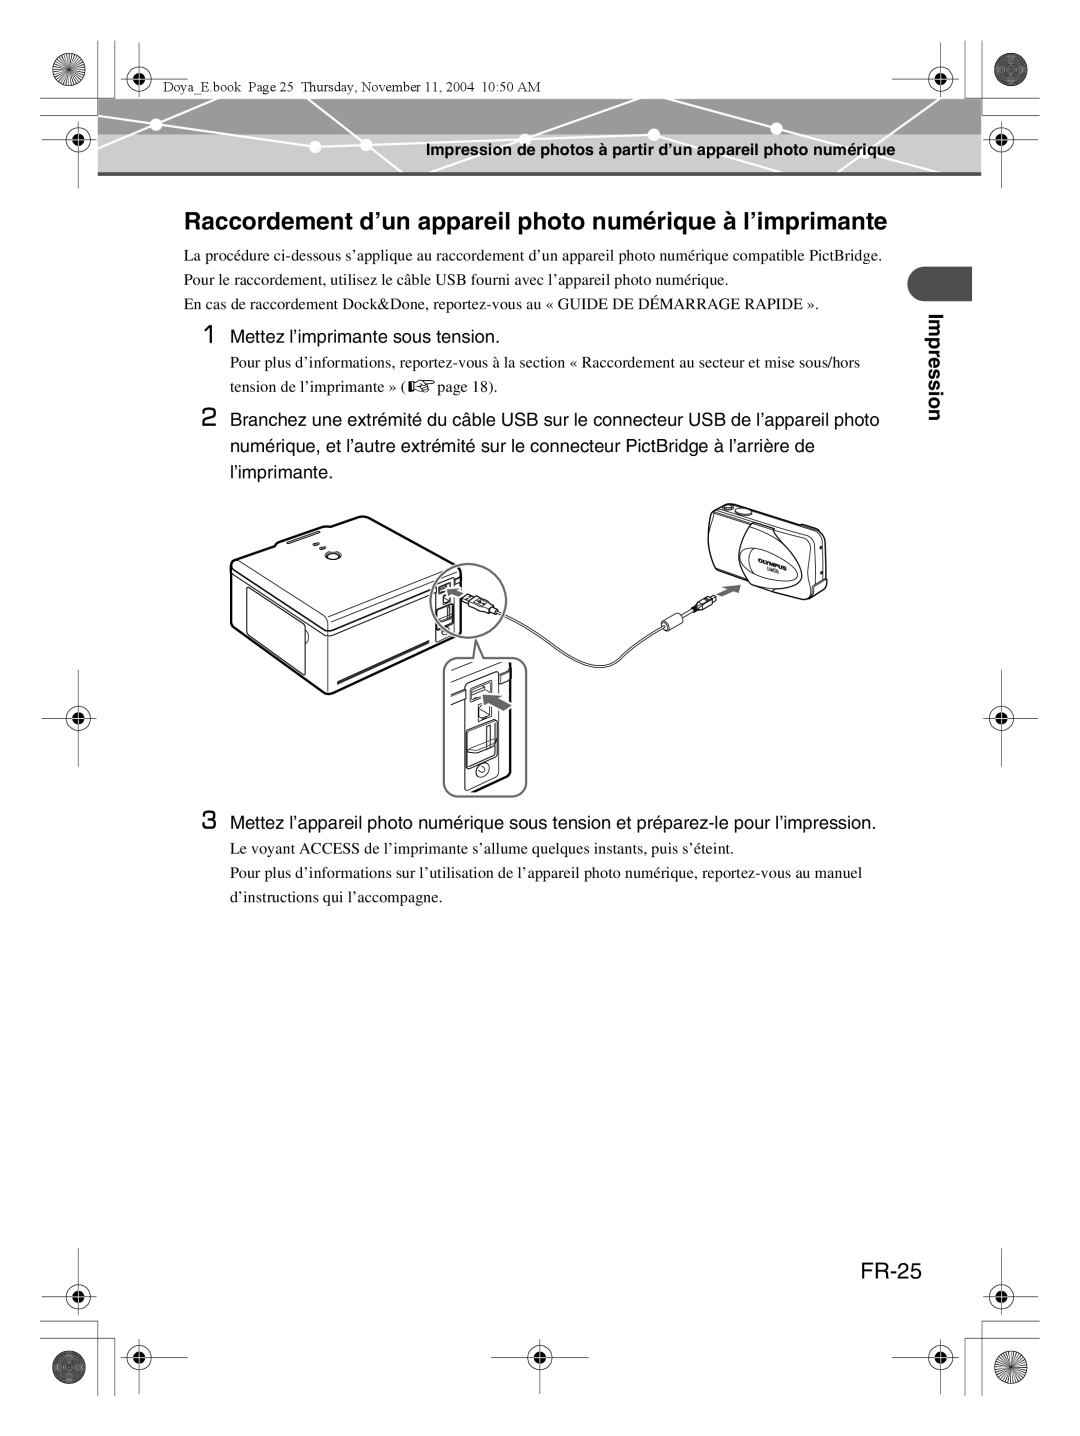 Olympus P-S100 user manual Raccordement d’un appareil photo numérique à l’imprimante, FR-25, Impression 